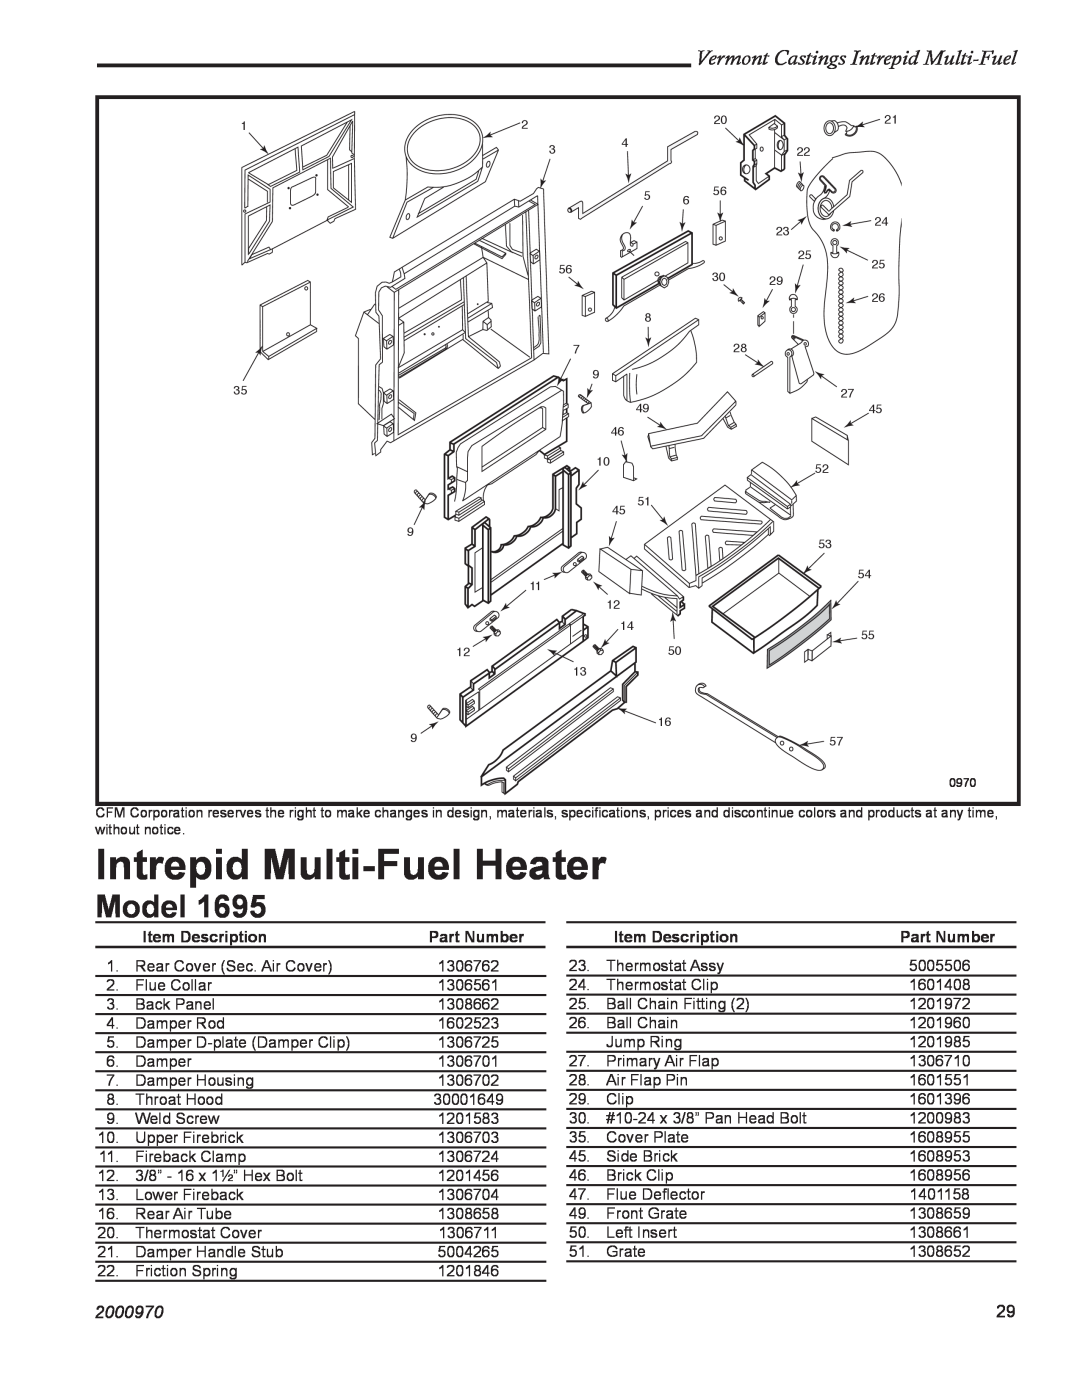 Vermont Casting 1695 Model, Intrepid Multi-FuelHeater, Vermont Castings Intrepid Multi-Fuel, 2000970, Item Description 